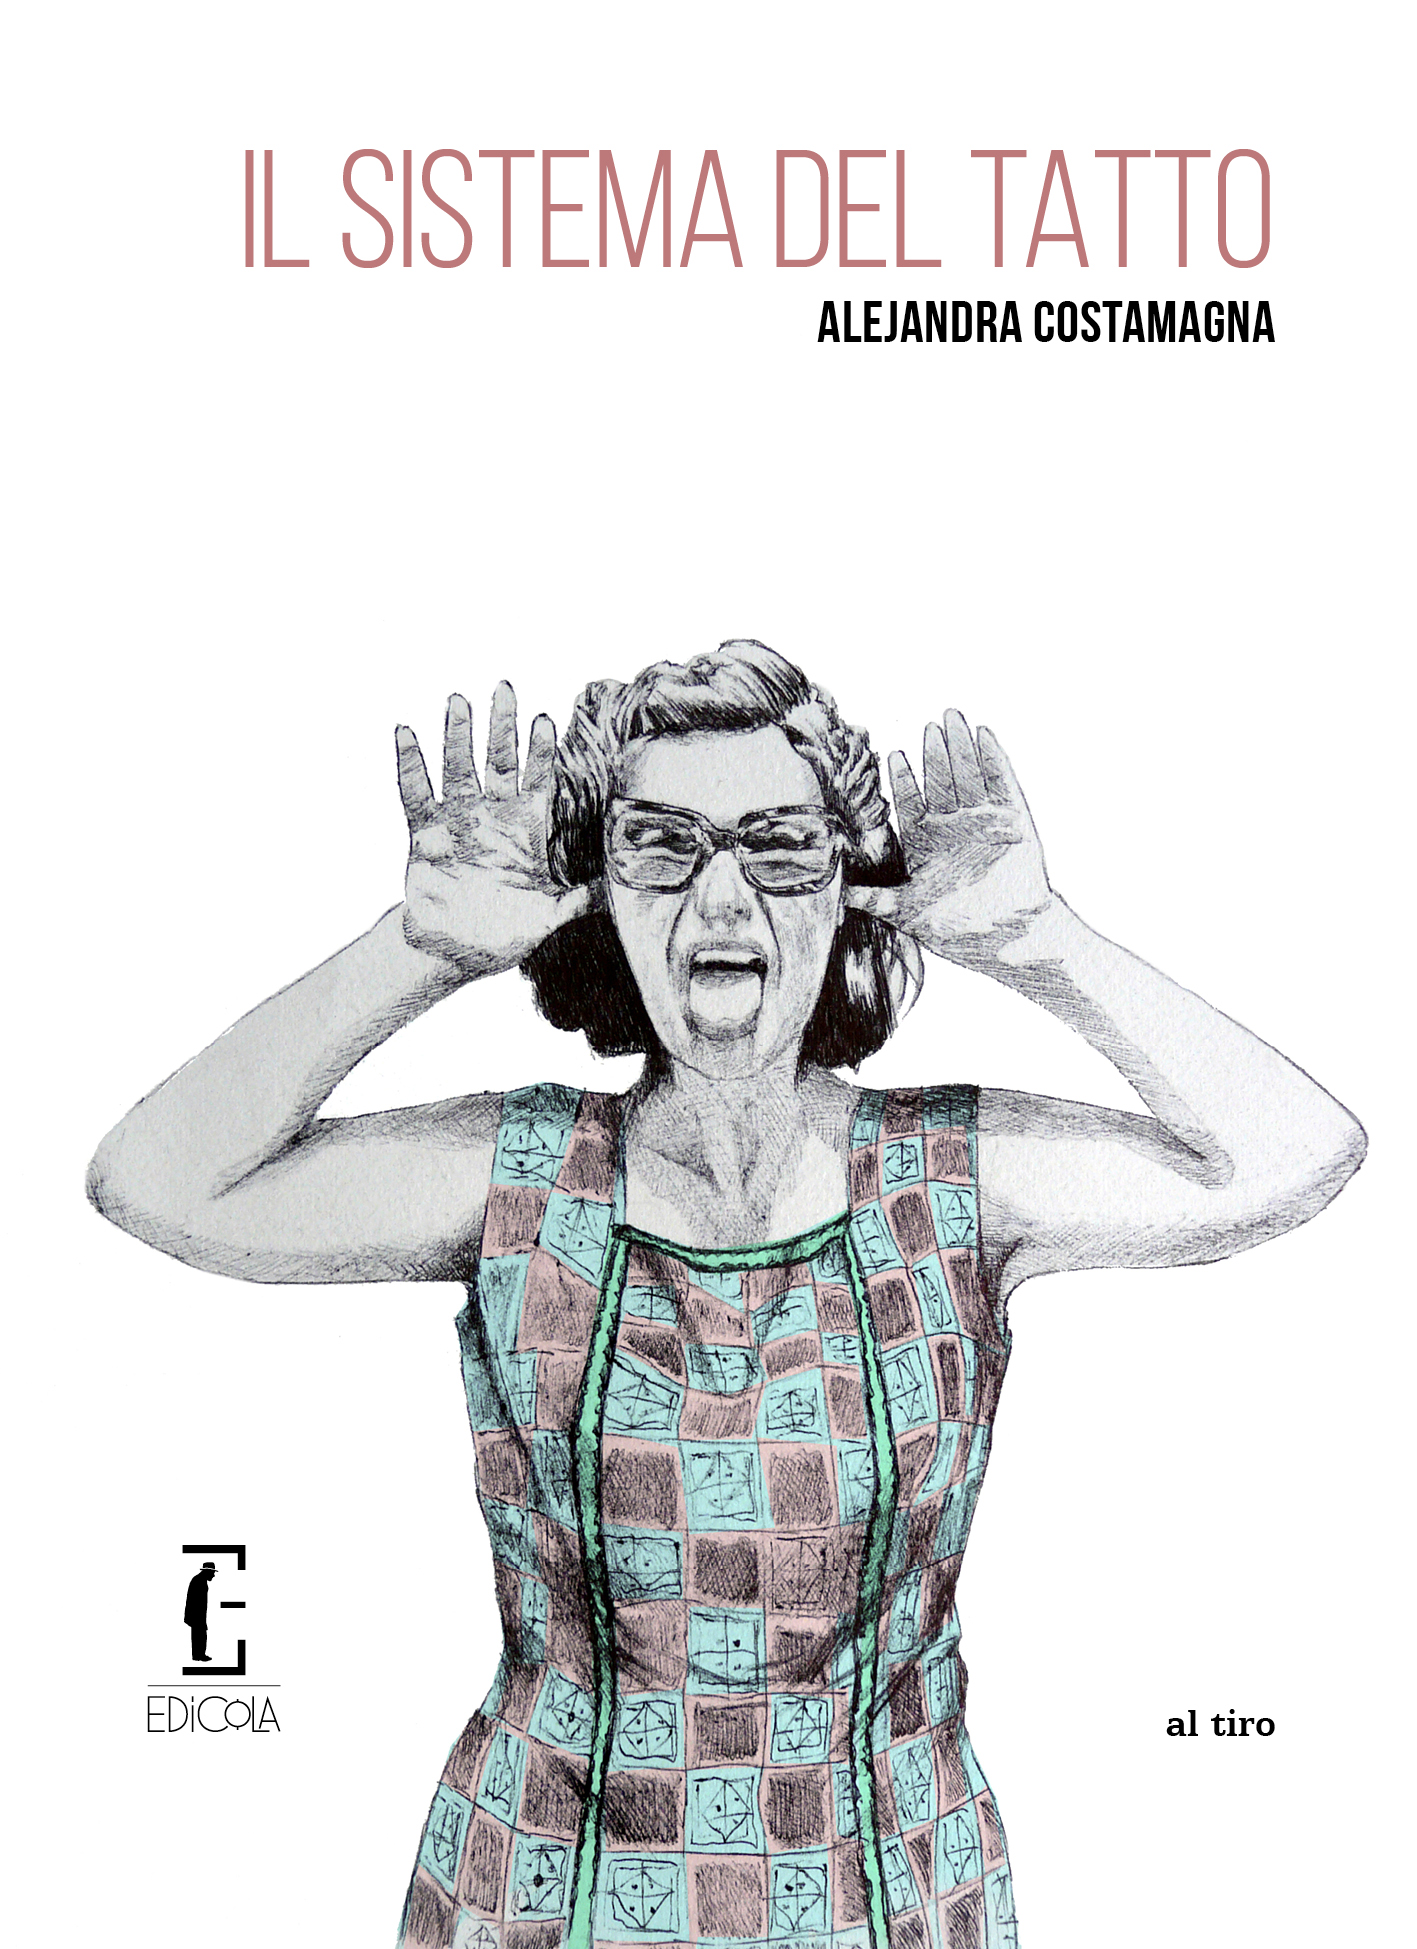 Identità e declino familiare: “Il sistema del tatto” di Alejandra Costamagna